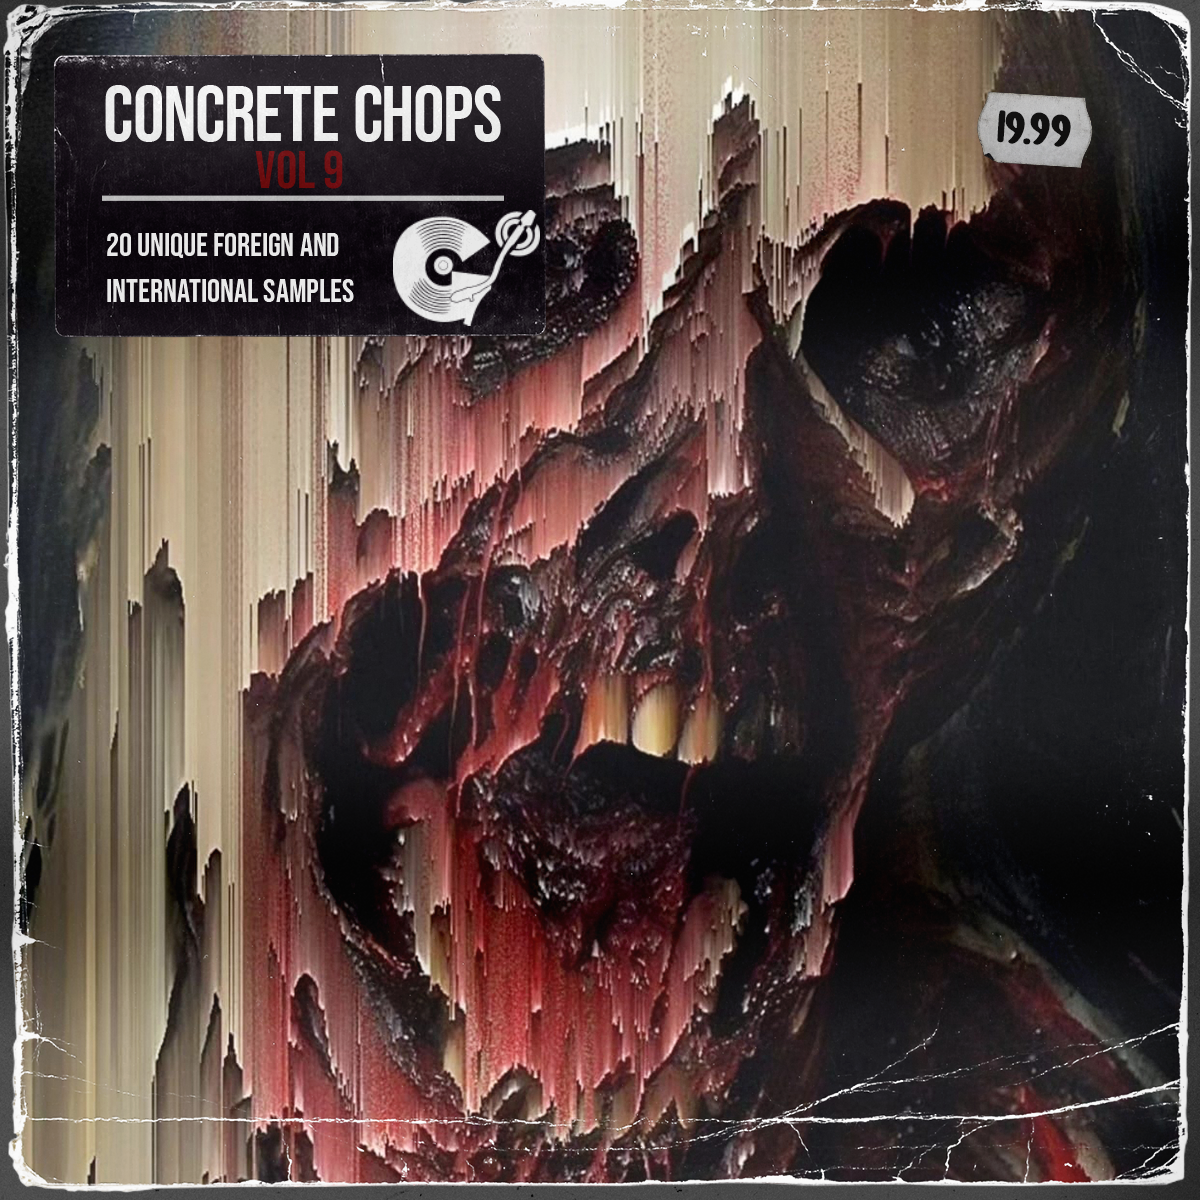 Concrete Chops Vol 9